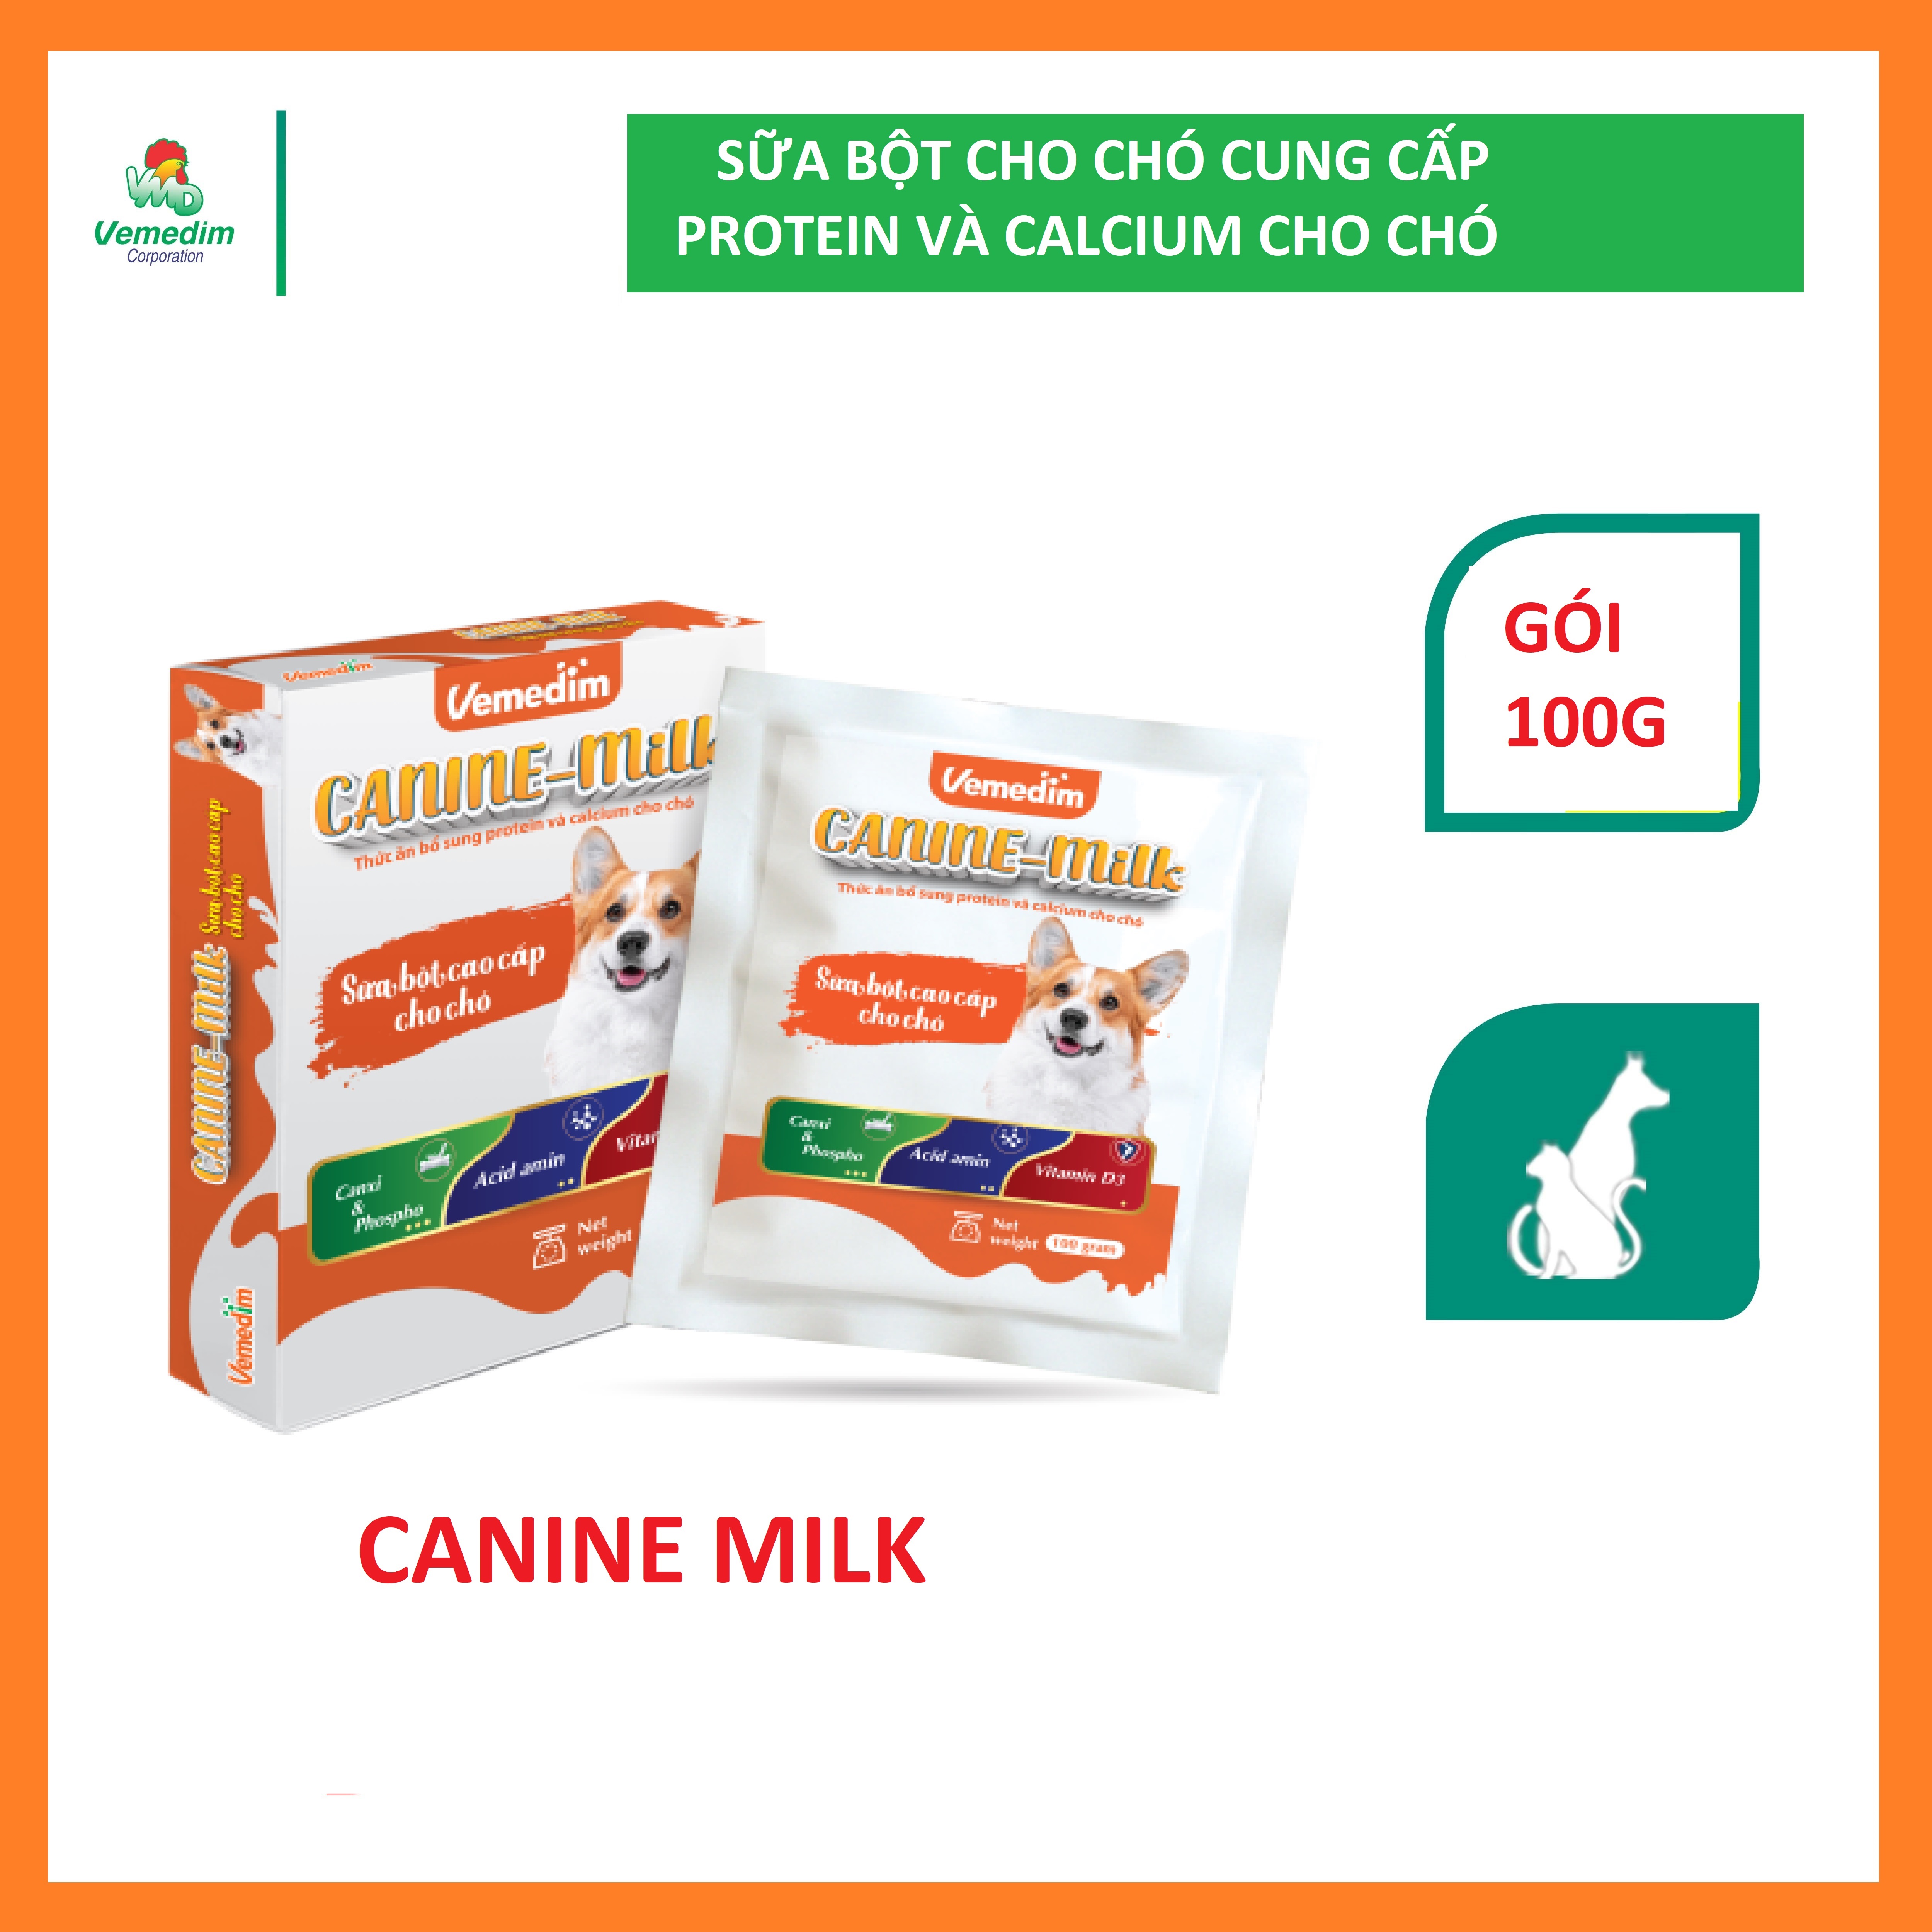 Vemedim Canine milk sữa bột bổ sung protein và calcium cho chó, an toàn khỏe mạnh, gói 100g